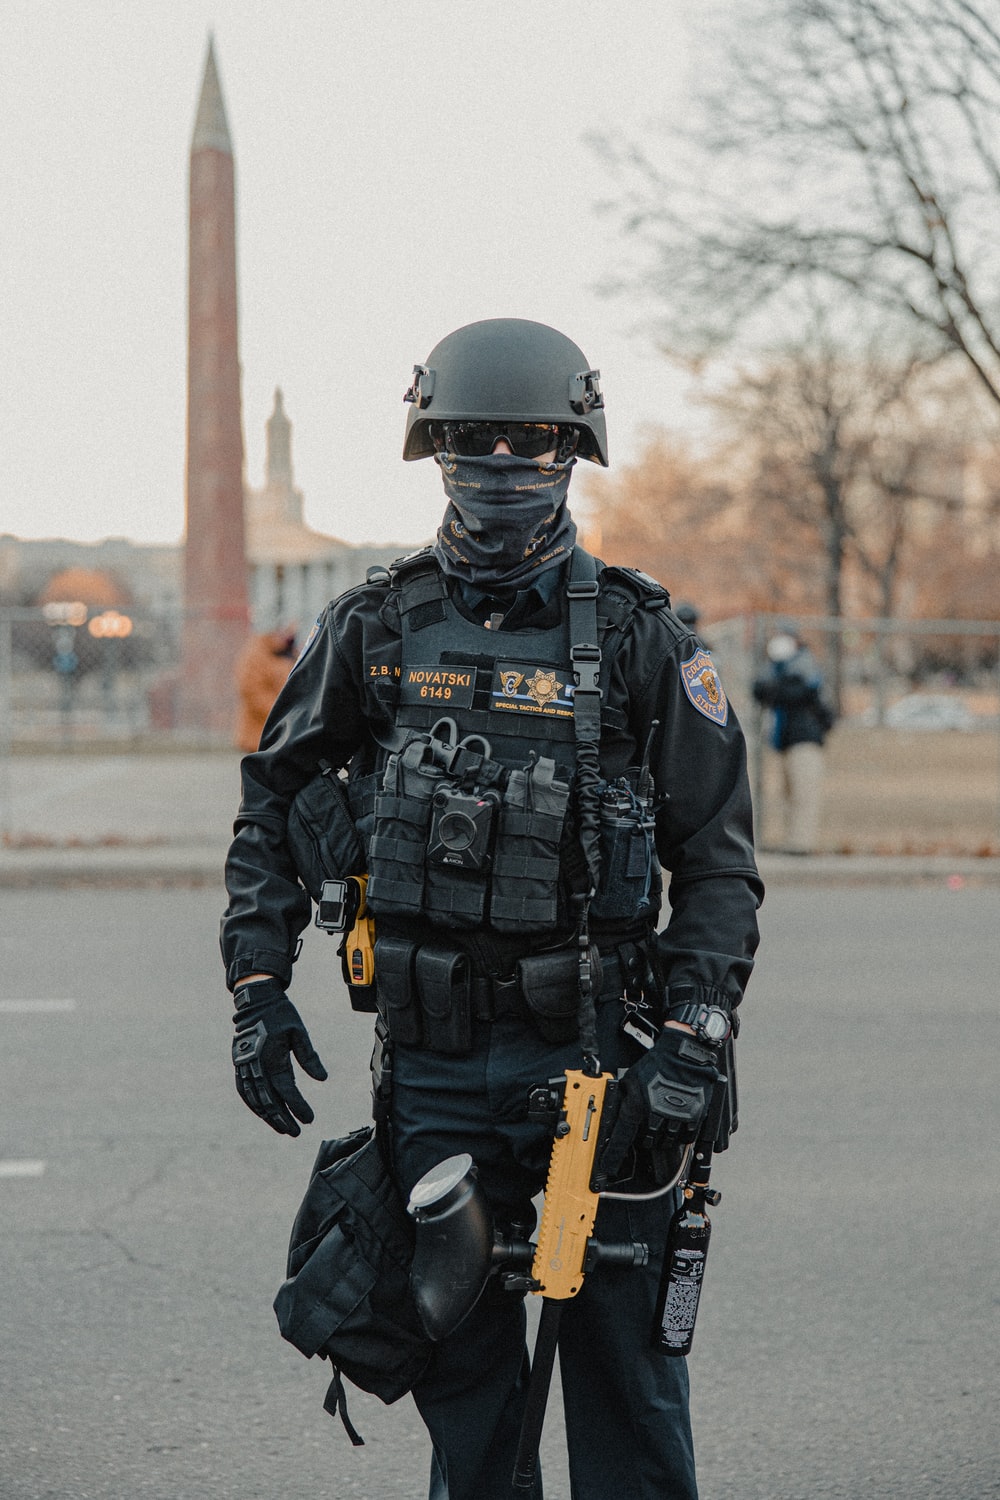 lapd swat uniform